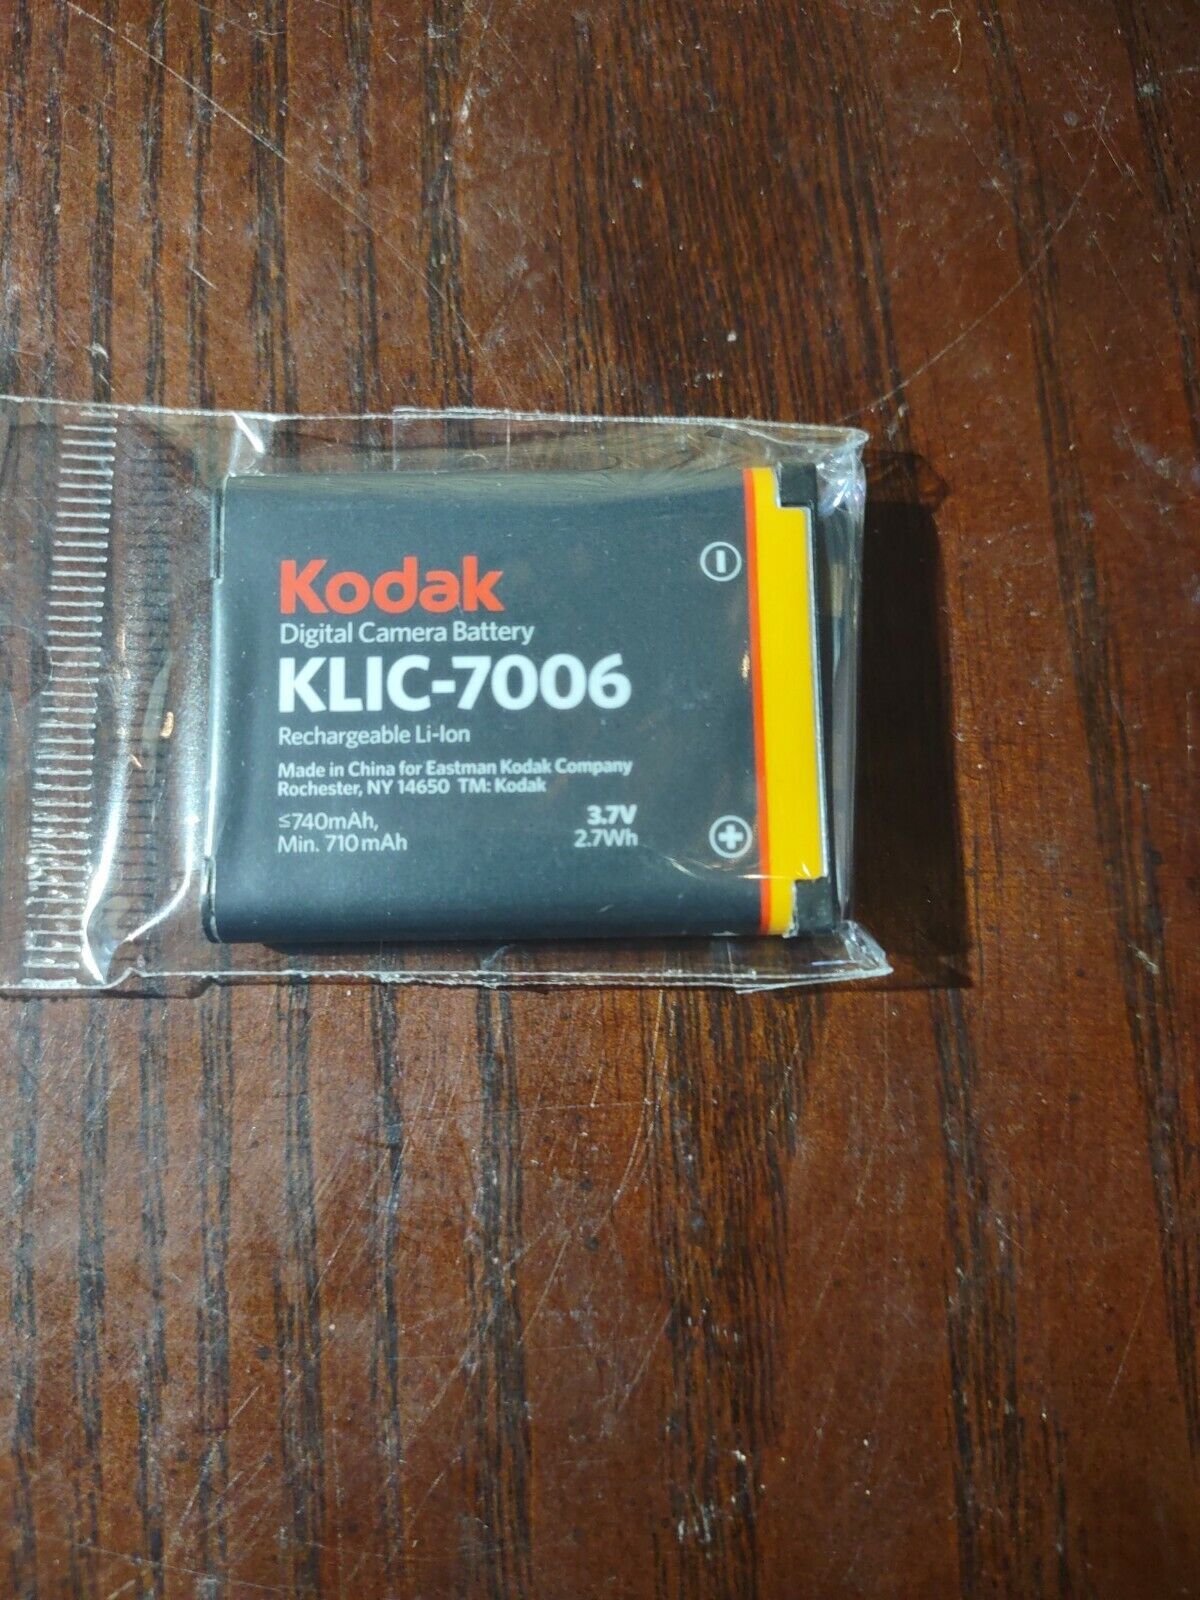 Kodak Digital Camera Battery KLIC-7006 - $29.58